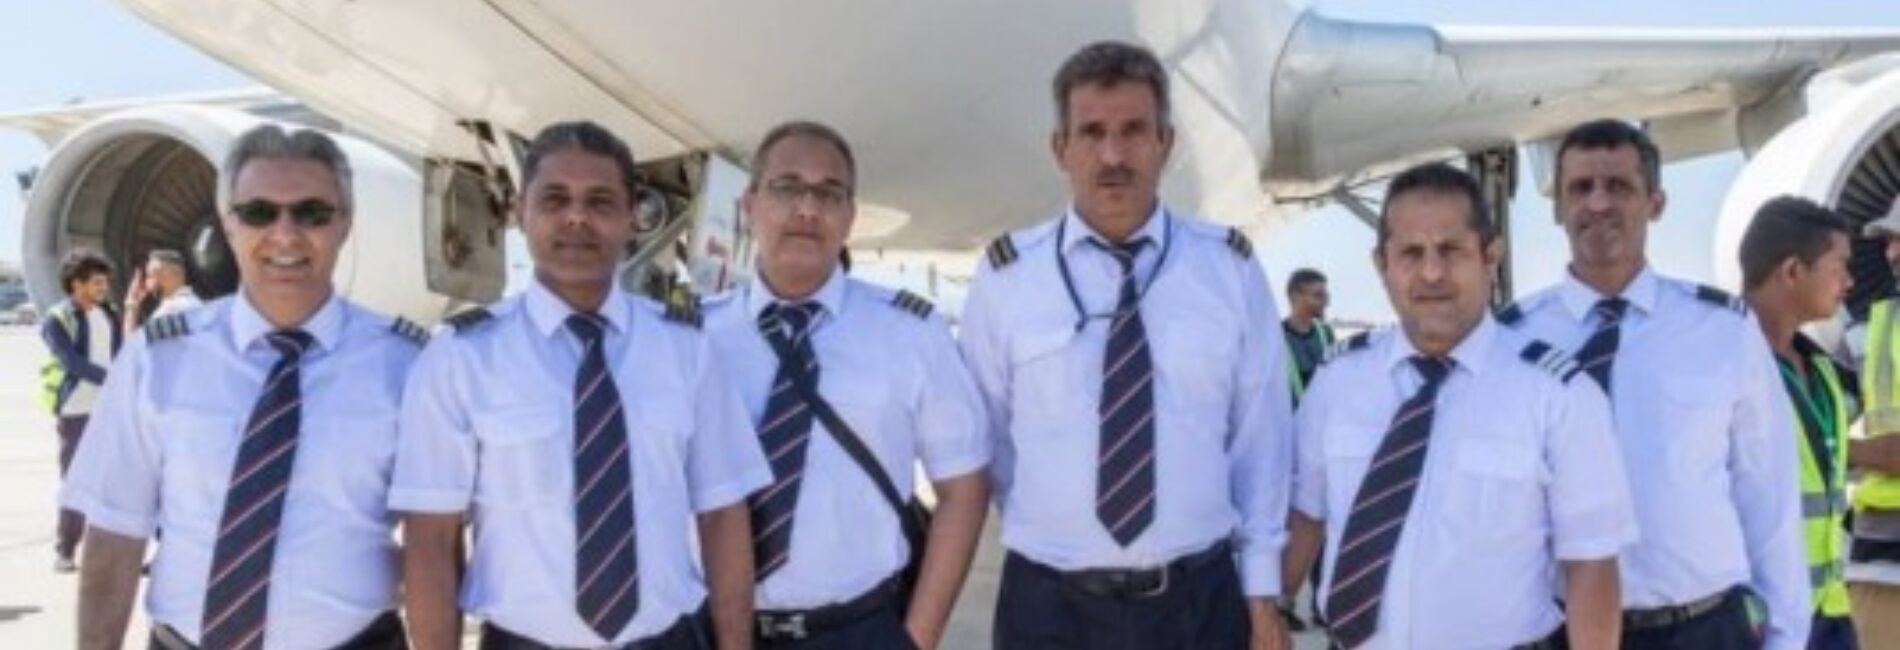 تدريب ميداني في مطار عدن الدولي على اخلاء الطائرة في الطوارئ